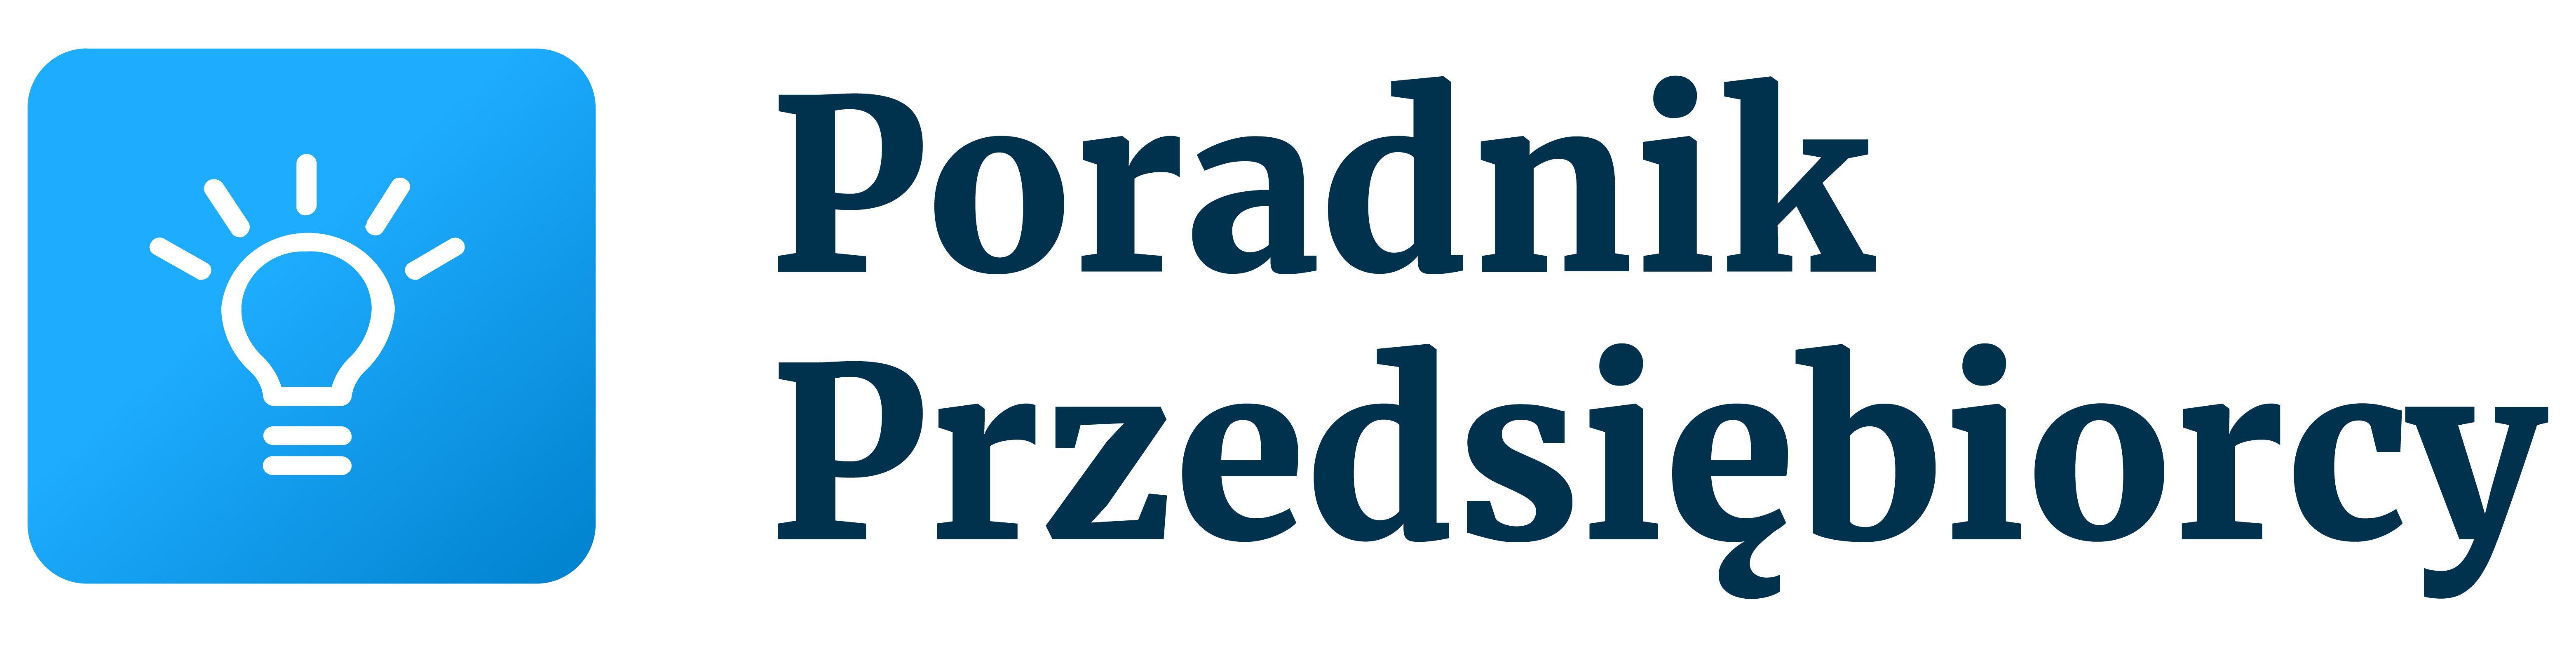 Poradnik Przedsiębiorcy logo